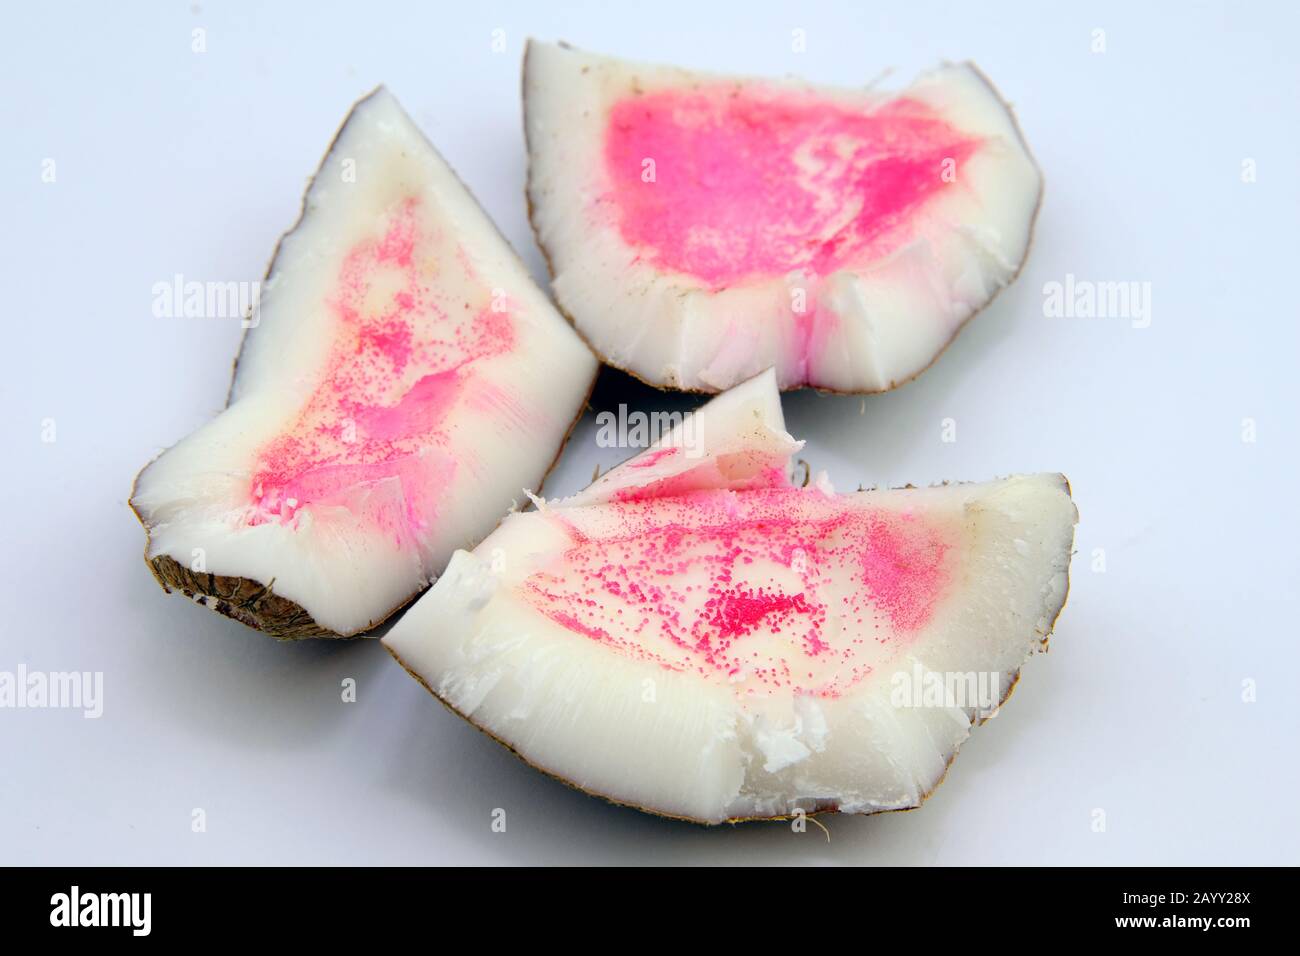 Macchie rosa sul cocco. Il cocco si è trasformato in rosa dopo l'apertura a causa della polifenol ossidasi o dell'attacco microbico. Foto Stock